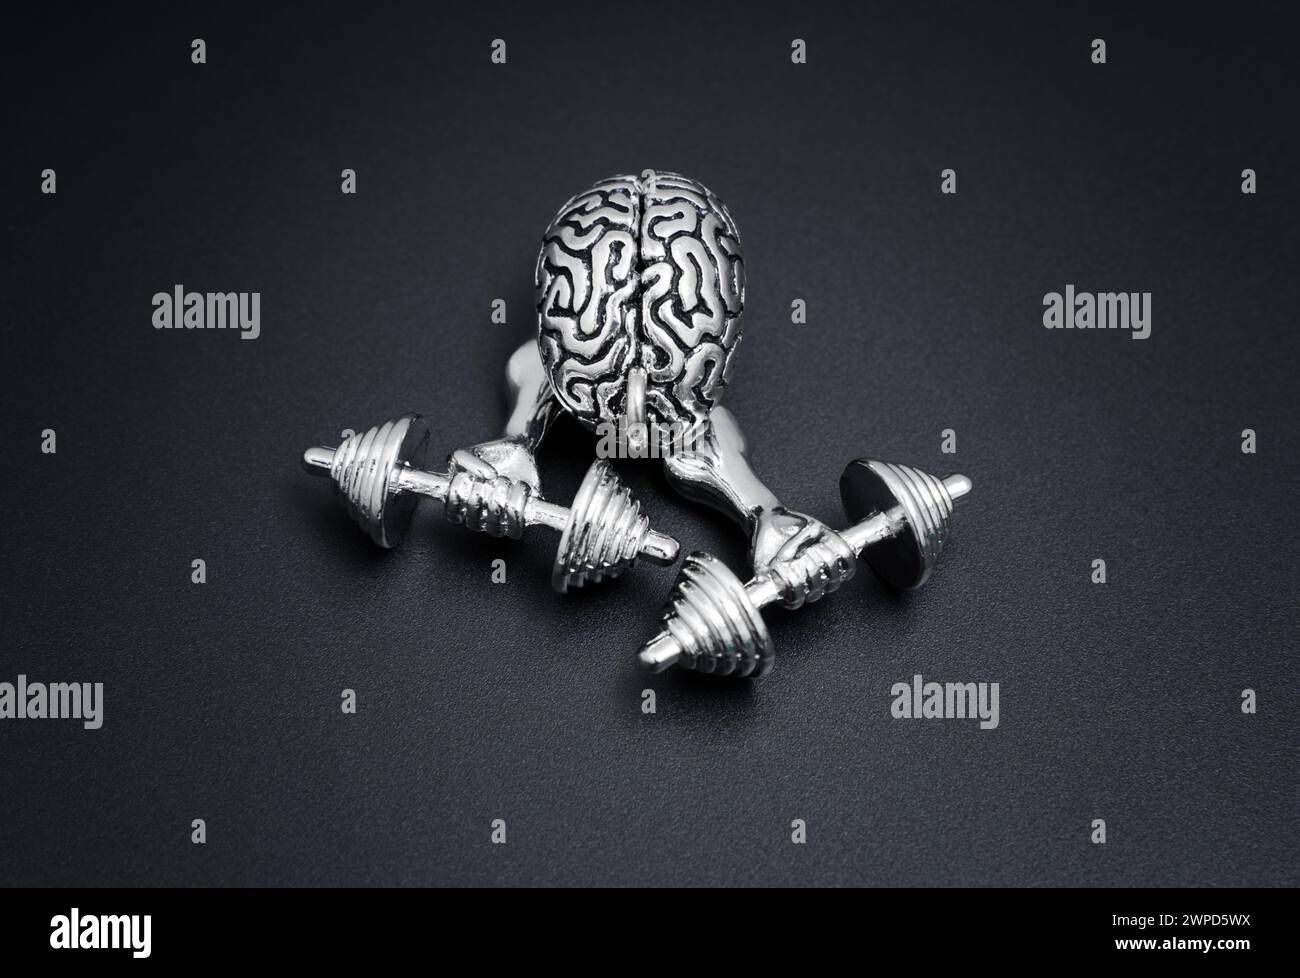 Statuetta del cervello umano che solleva pesanti manubri con le mani pompate. Esercizio mentale e concetto relativo alla salute mentale. Foto Stock